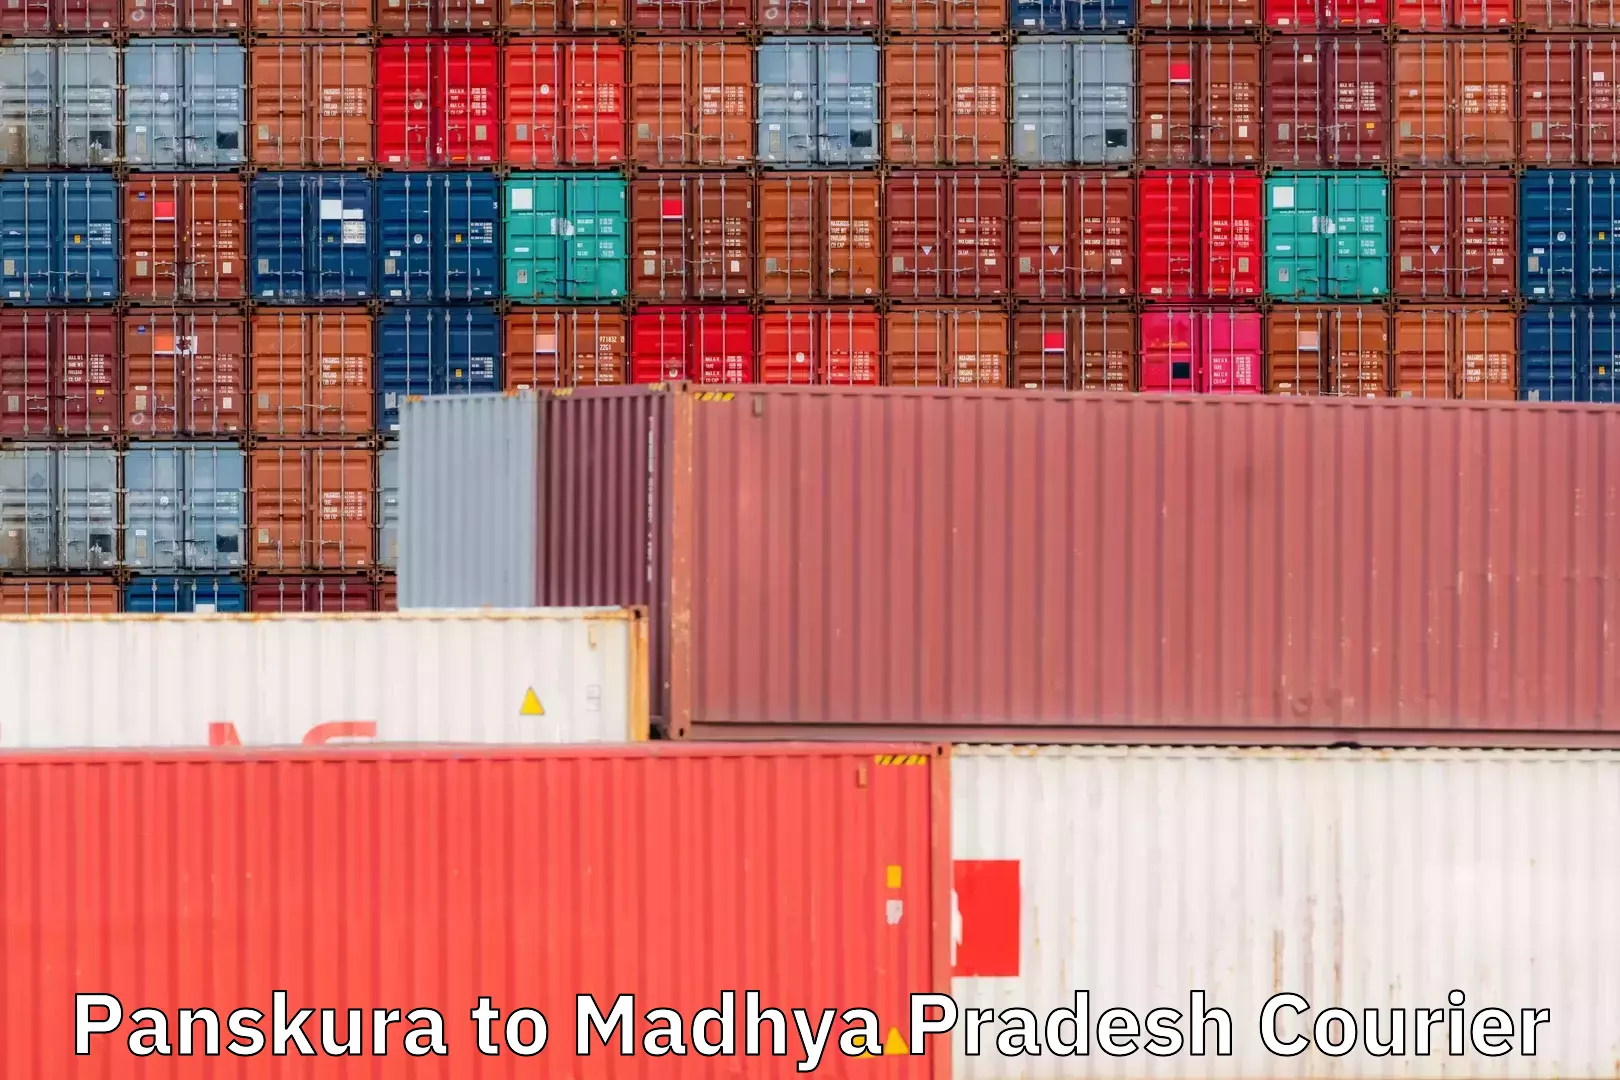 On-demand shipping options Panskura to Madhya Pradesh